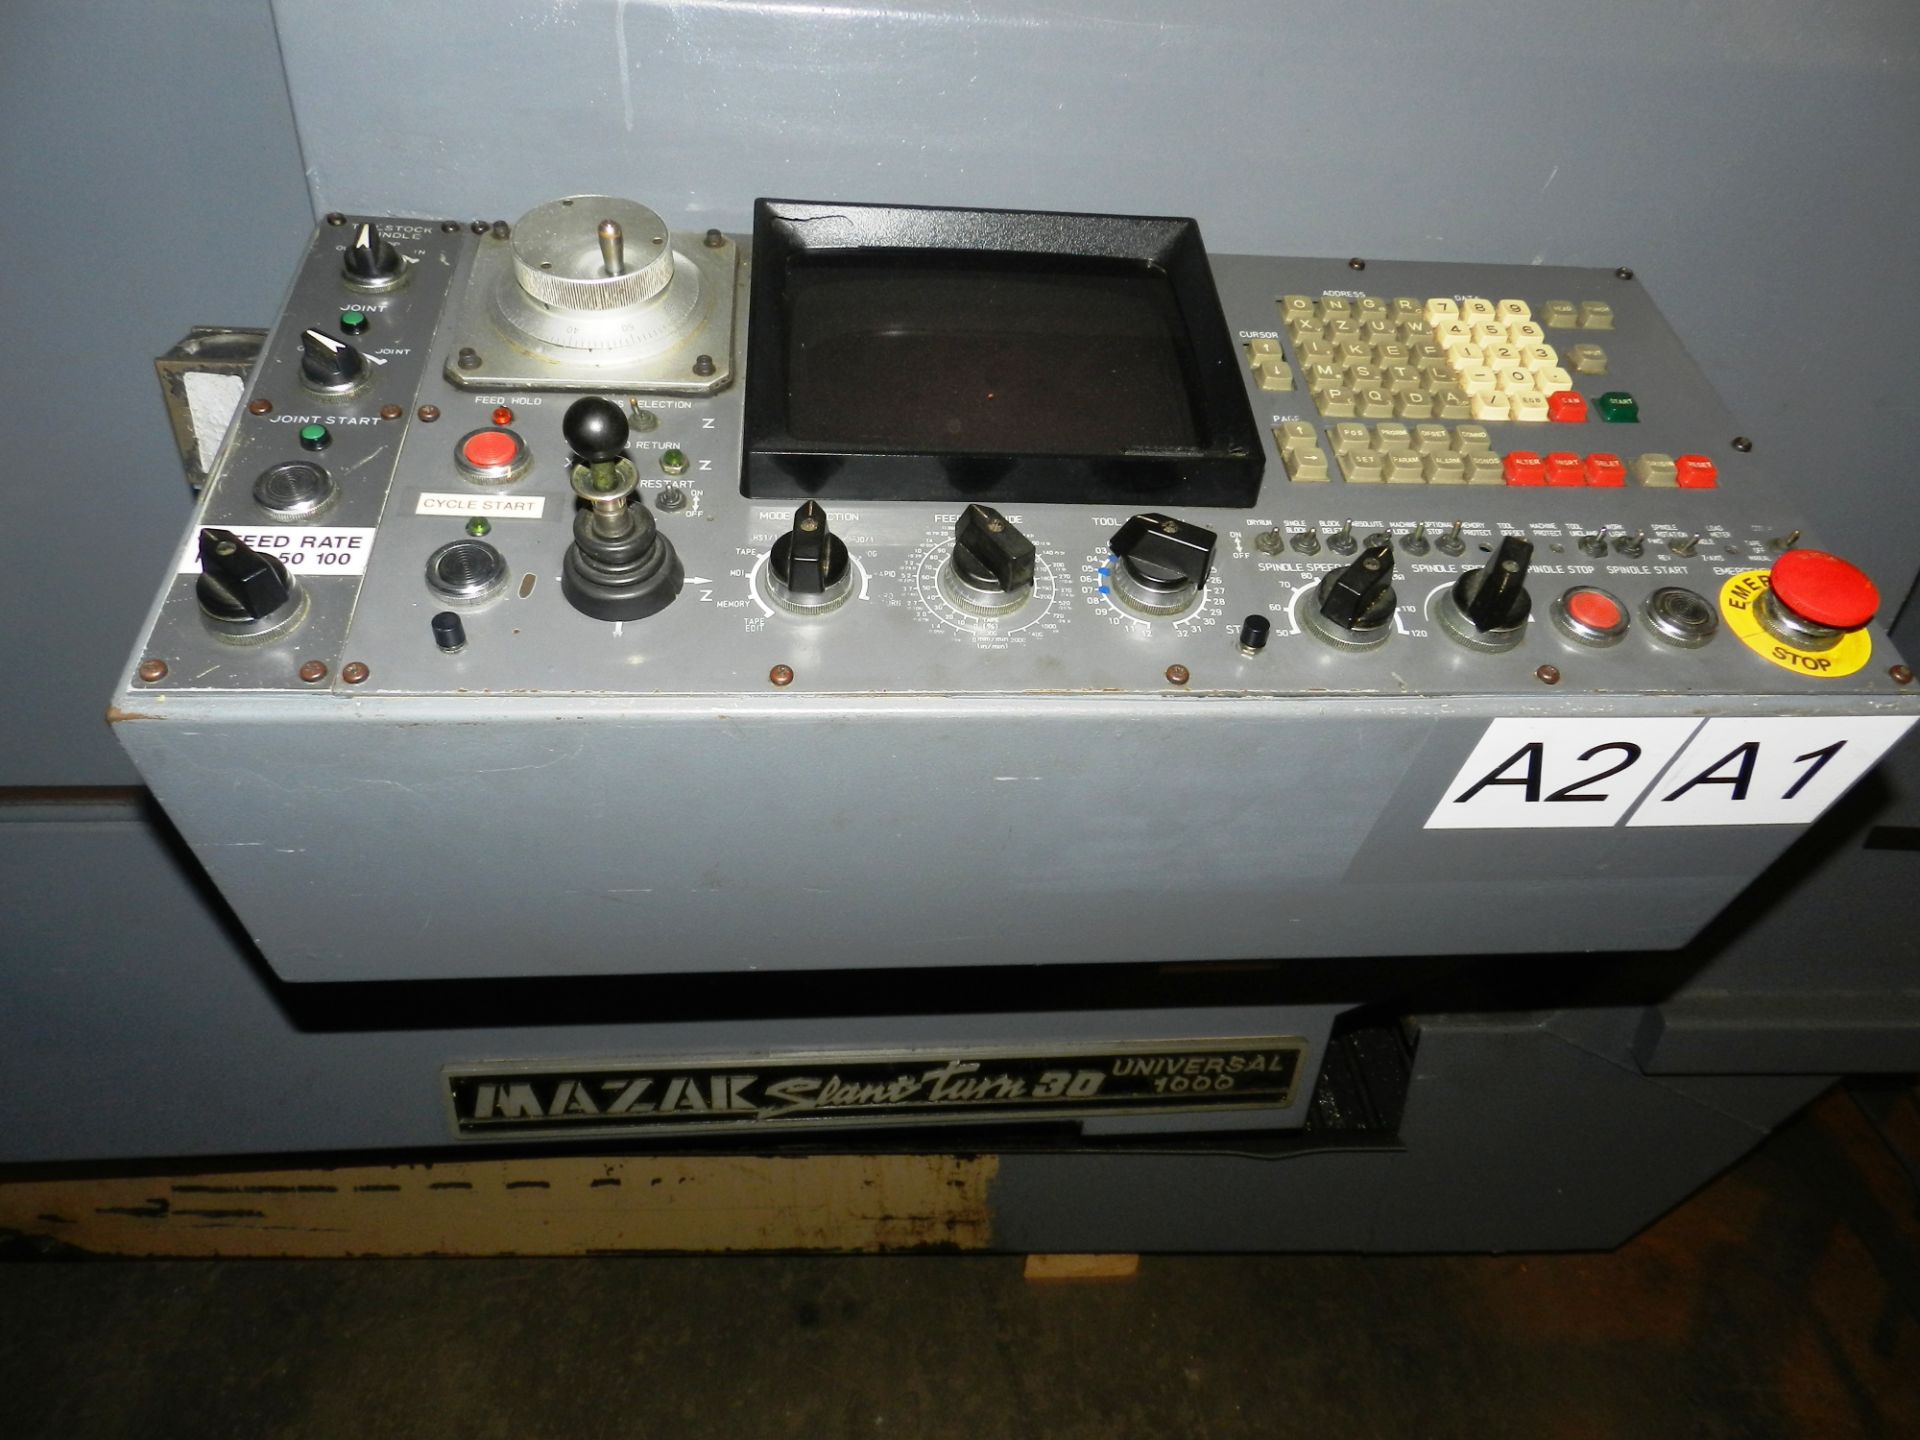 Mazak Slant Turn 30 Universal 1000 CNC Lathe Fanuc Controls - Image 9 of 12